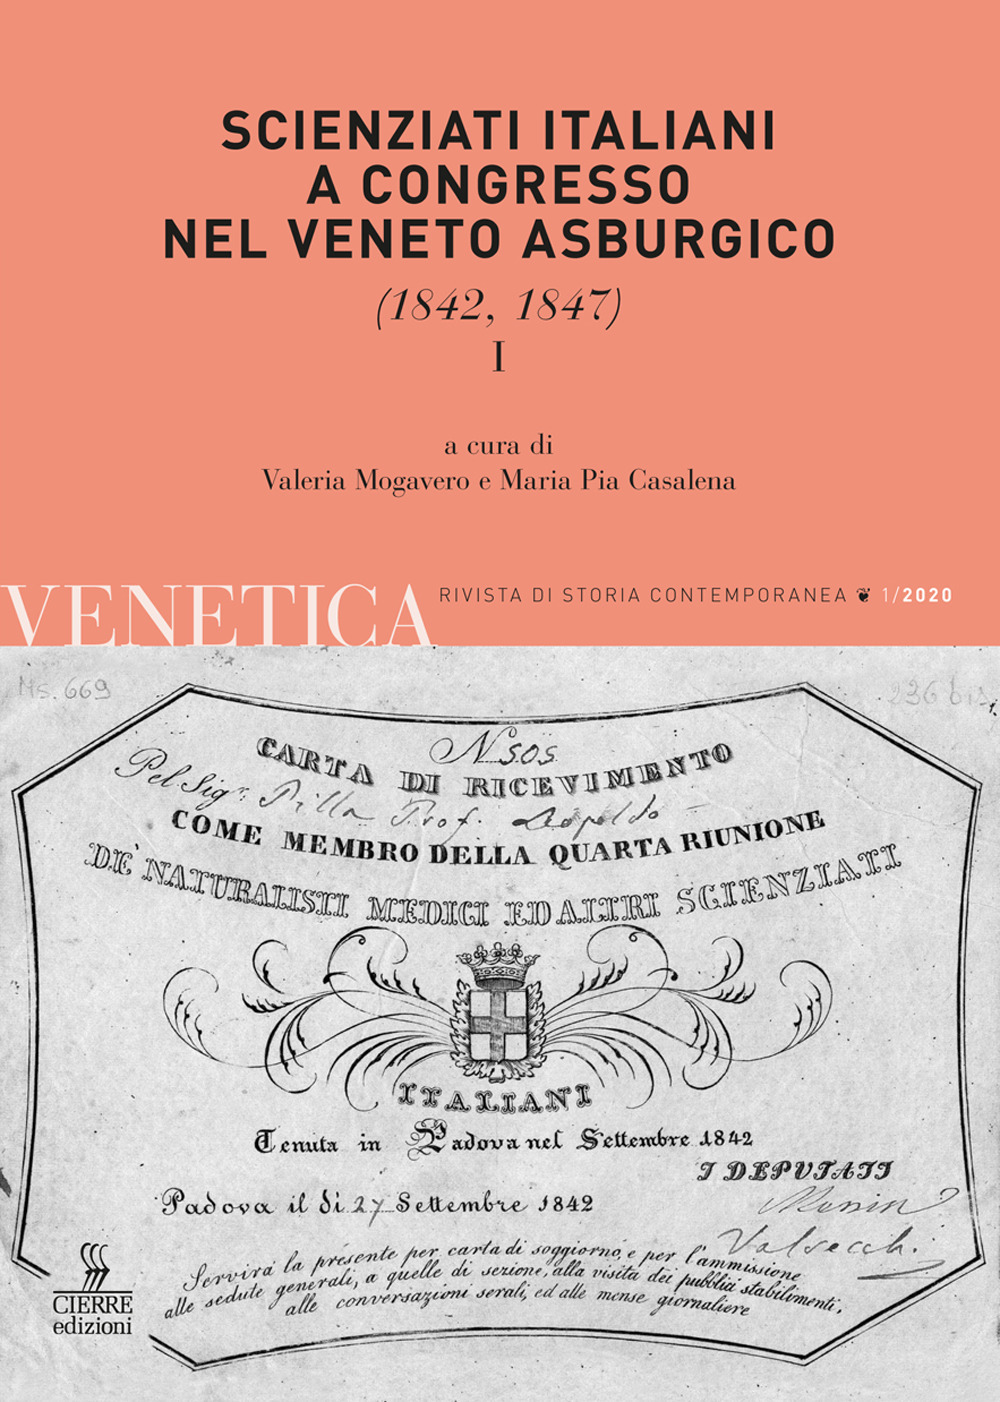 Venetica. Annuario di storia delle Venezie in età contemporanea (2020). Vol. 1: Scienziati italiani a congresso nel Veneto asburgico. (1842, 1847)